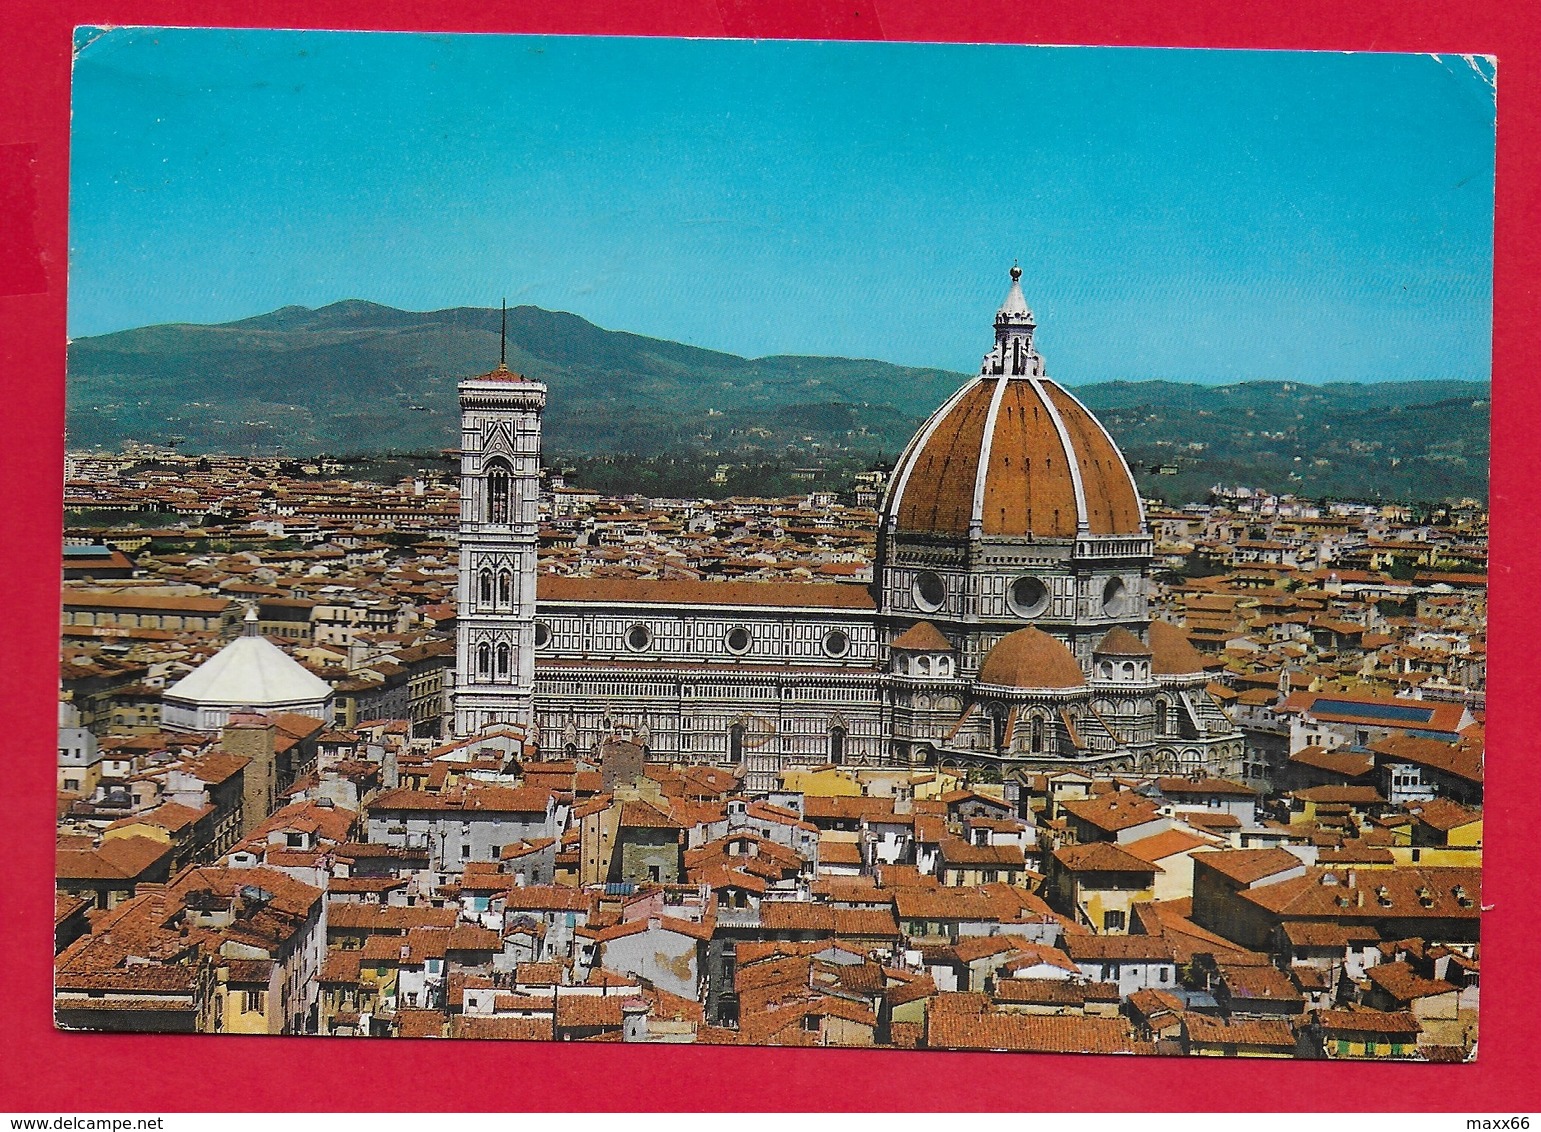 CARTOLINA VG ITALIA - FIRENZE - La Cattedrale Vista Da Palazzo Vecchio - 10 X 15 - 1969 - Firenze